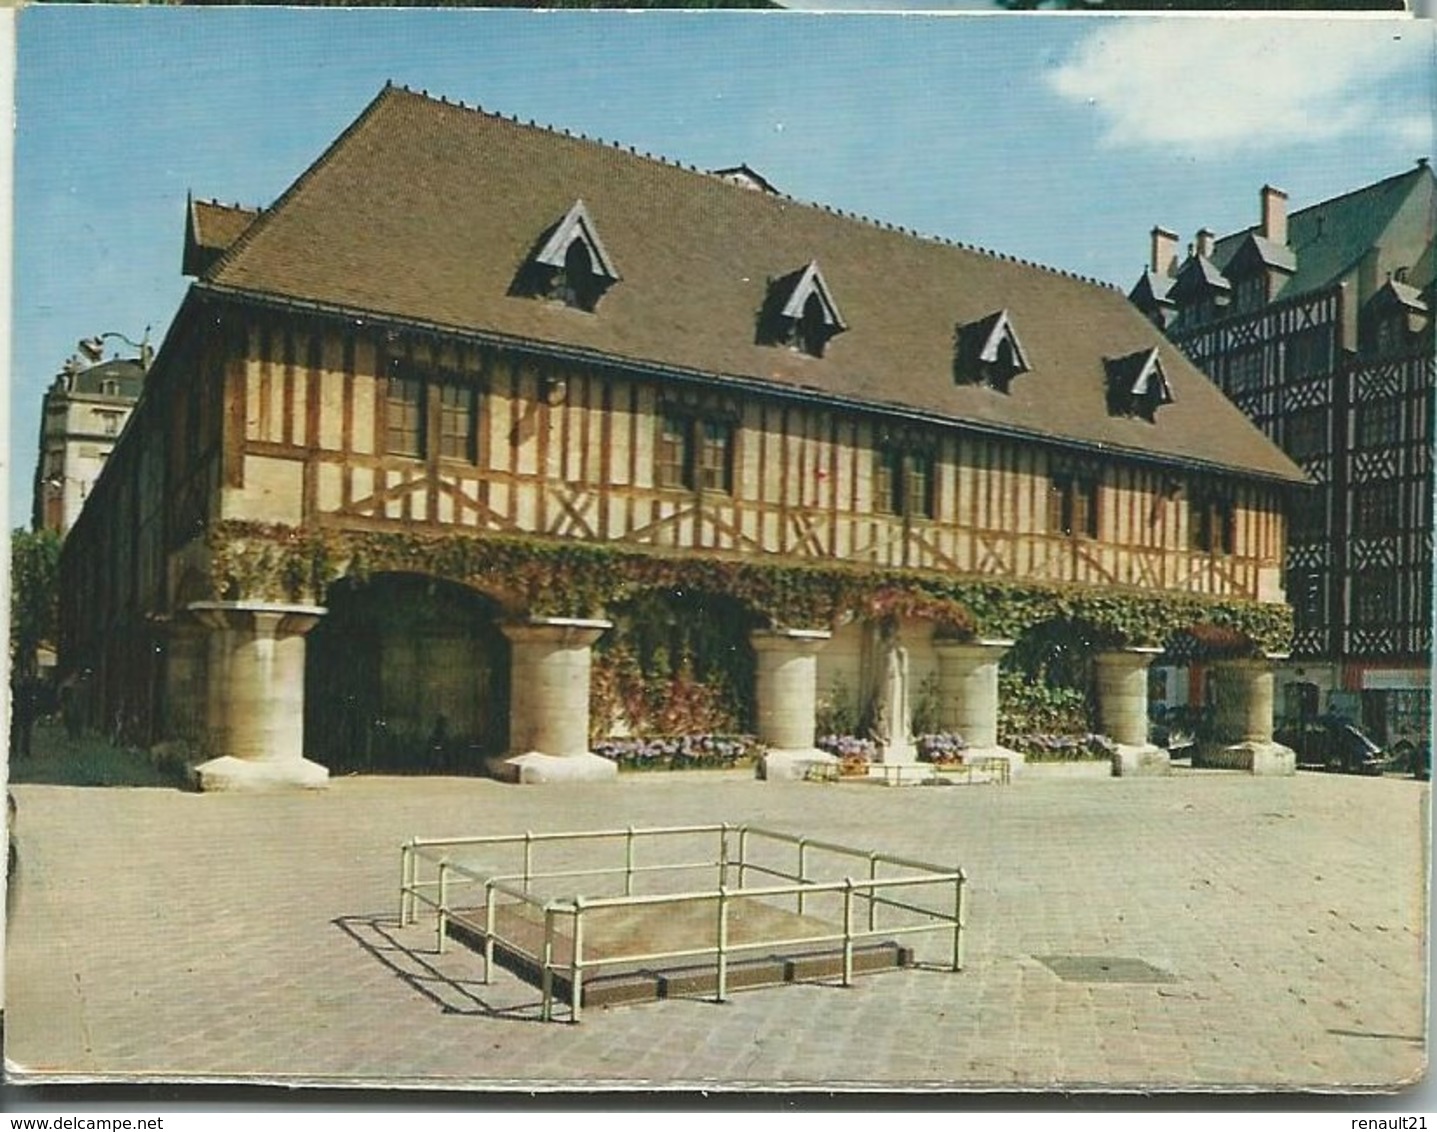 Rouen-Mini-carnet (10,5 cm x 8 cm) de 12 vues (Toutes scannées) (CPM)